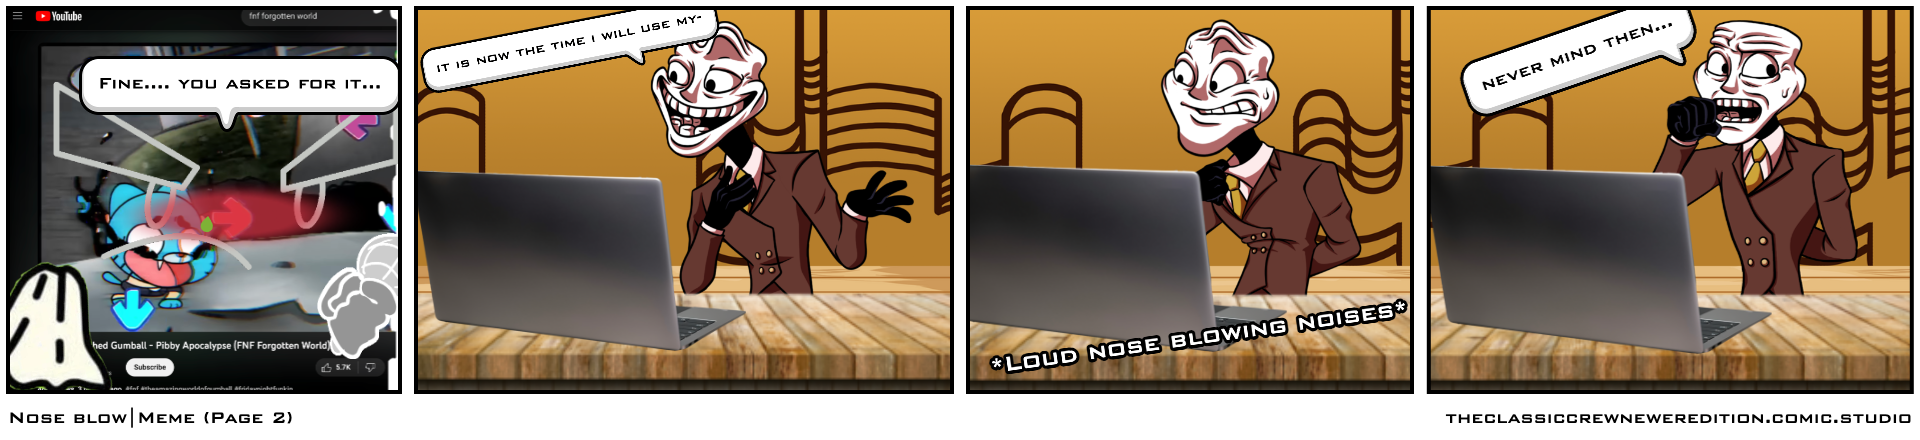 Nose blow|Meme (Page 2)